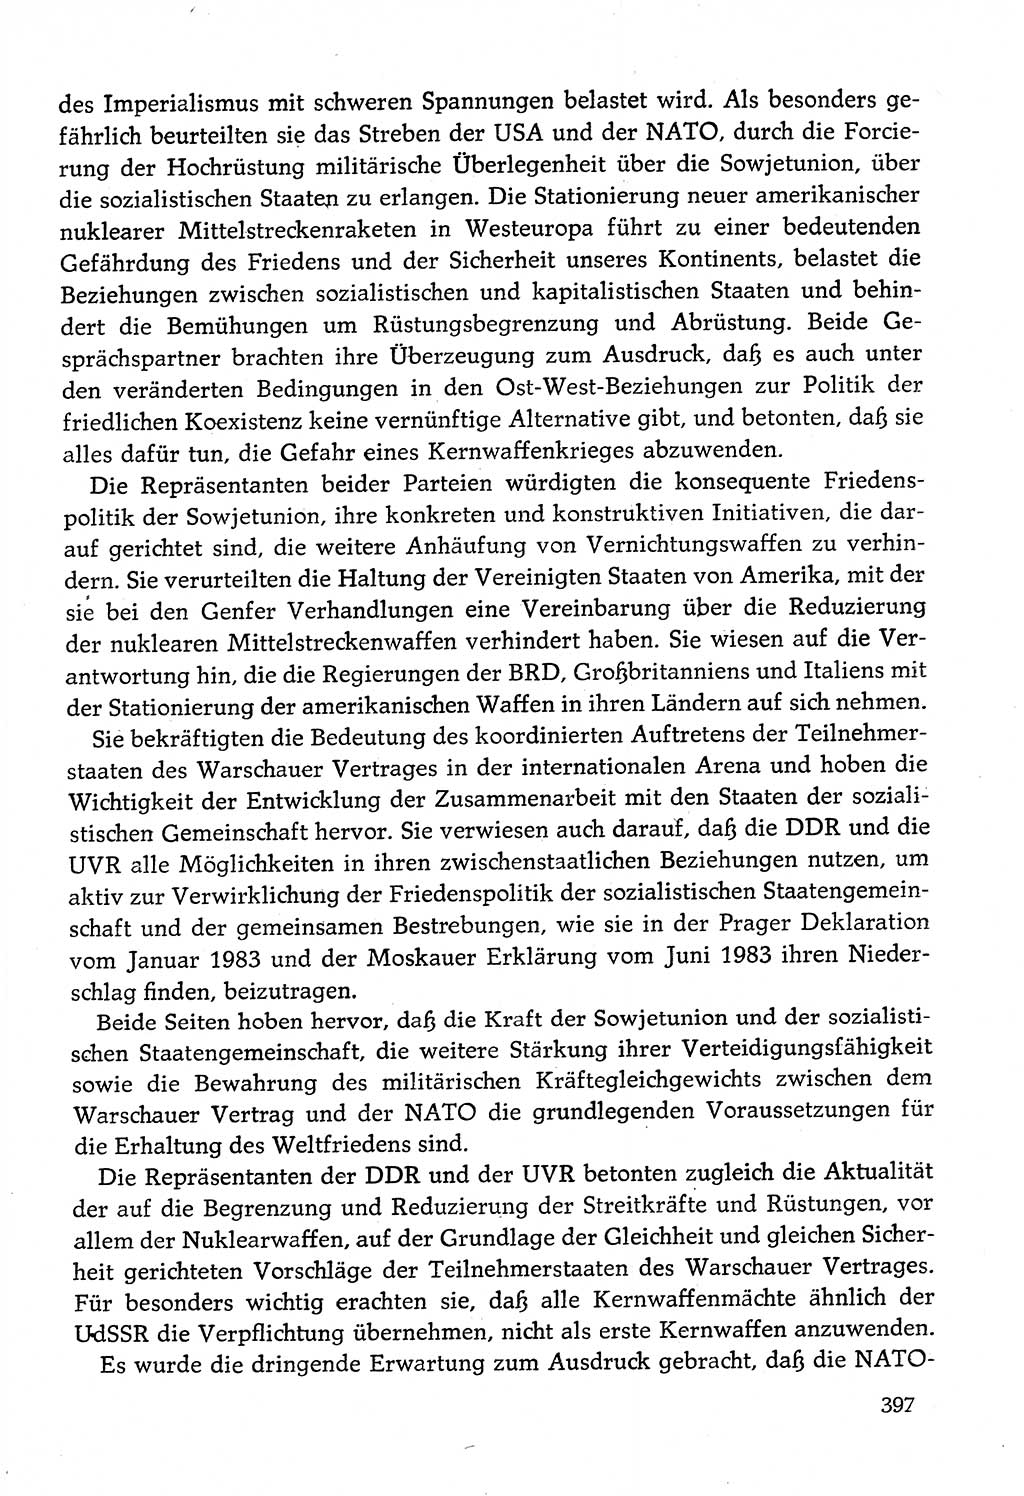 Dokumente der Sozialistischen Einheitspartei Deutschlands (SED) [Deutsche Demokratische Republik (DDR)] 1982-1983, Seite 397 (Dok. SED DDR 1982-1983, S. 397)